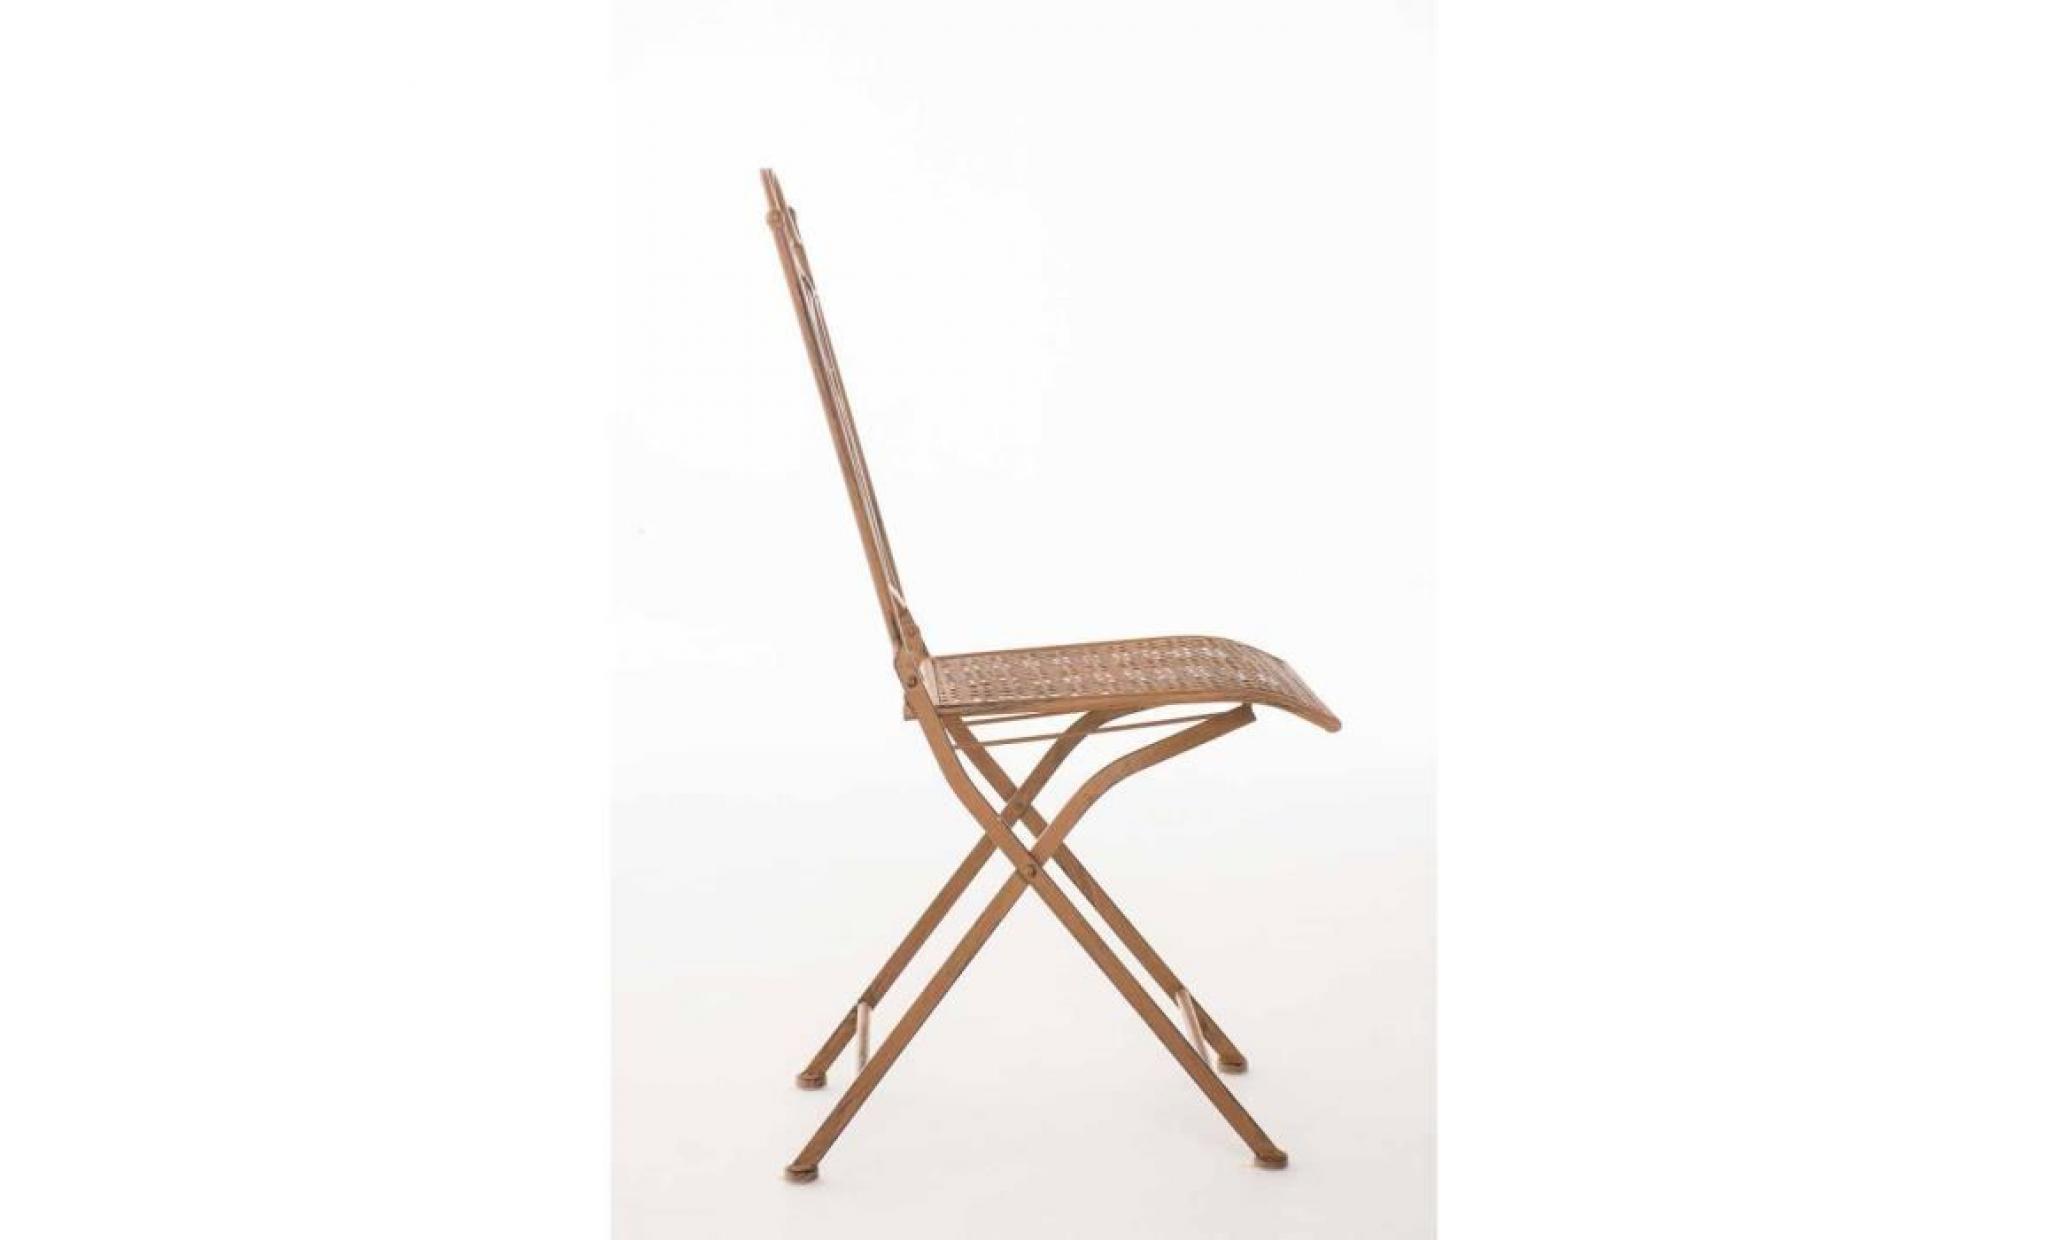 clp chaise nostalgique pliable lunis, chaise fer forgé, chaise pliante, chaise antique, 6 couleurs au choix 91 cm bronze pas cher